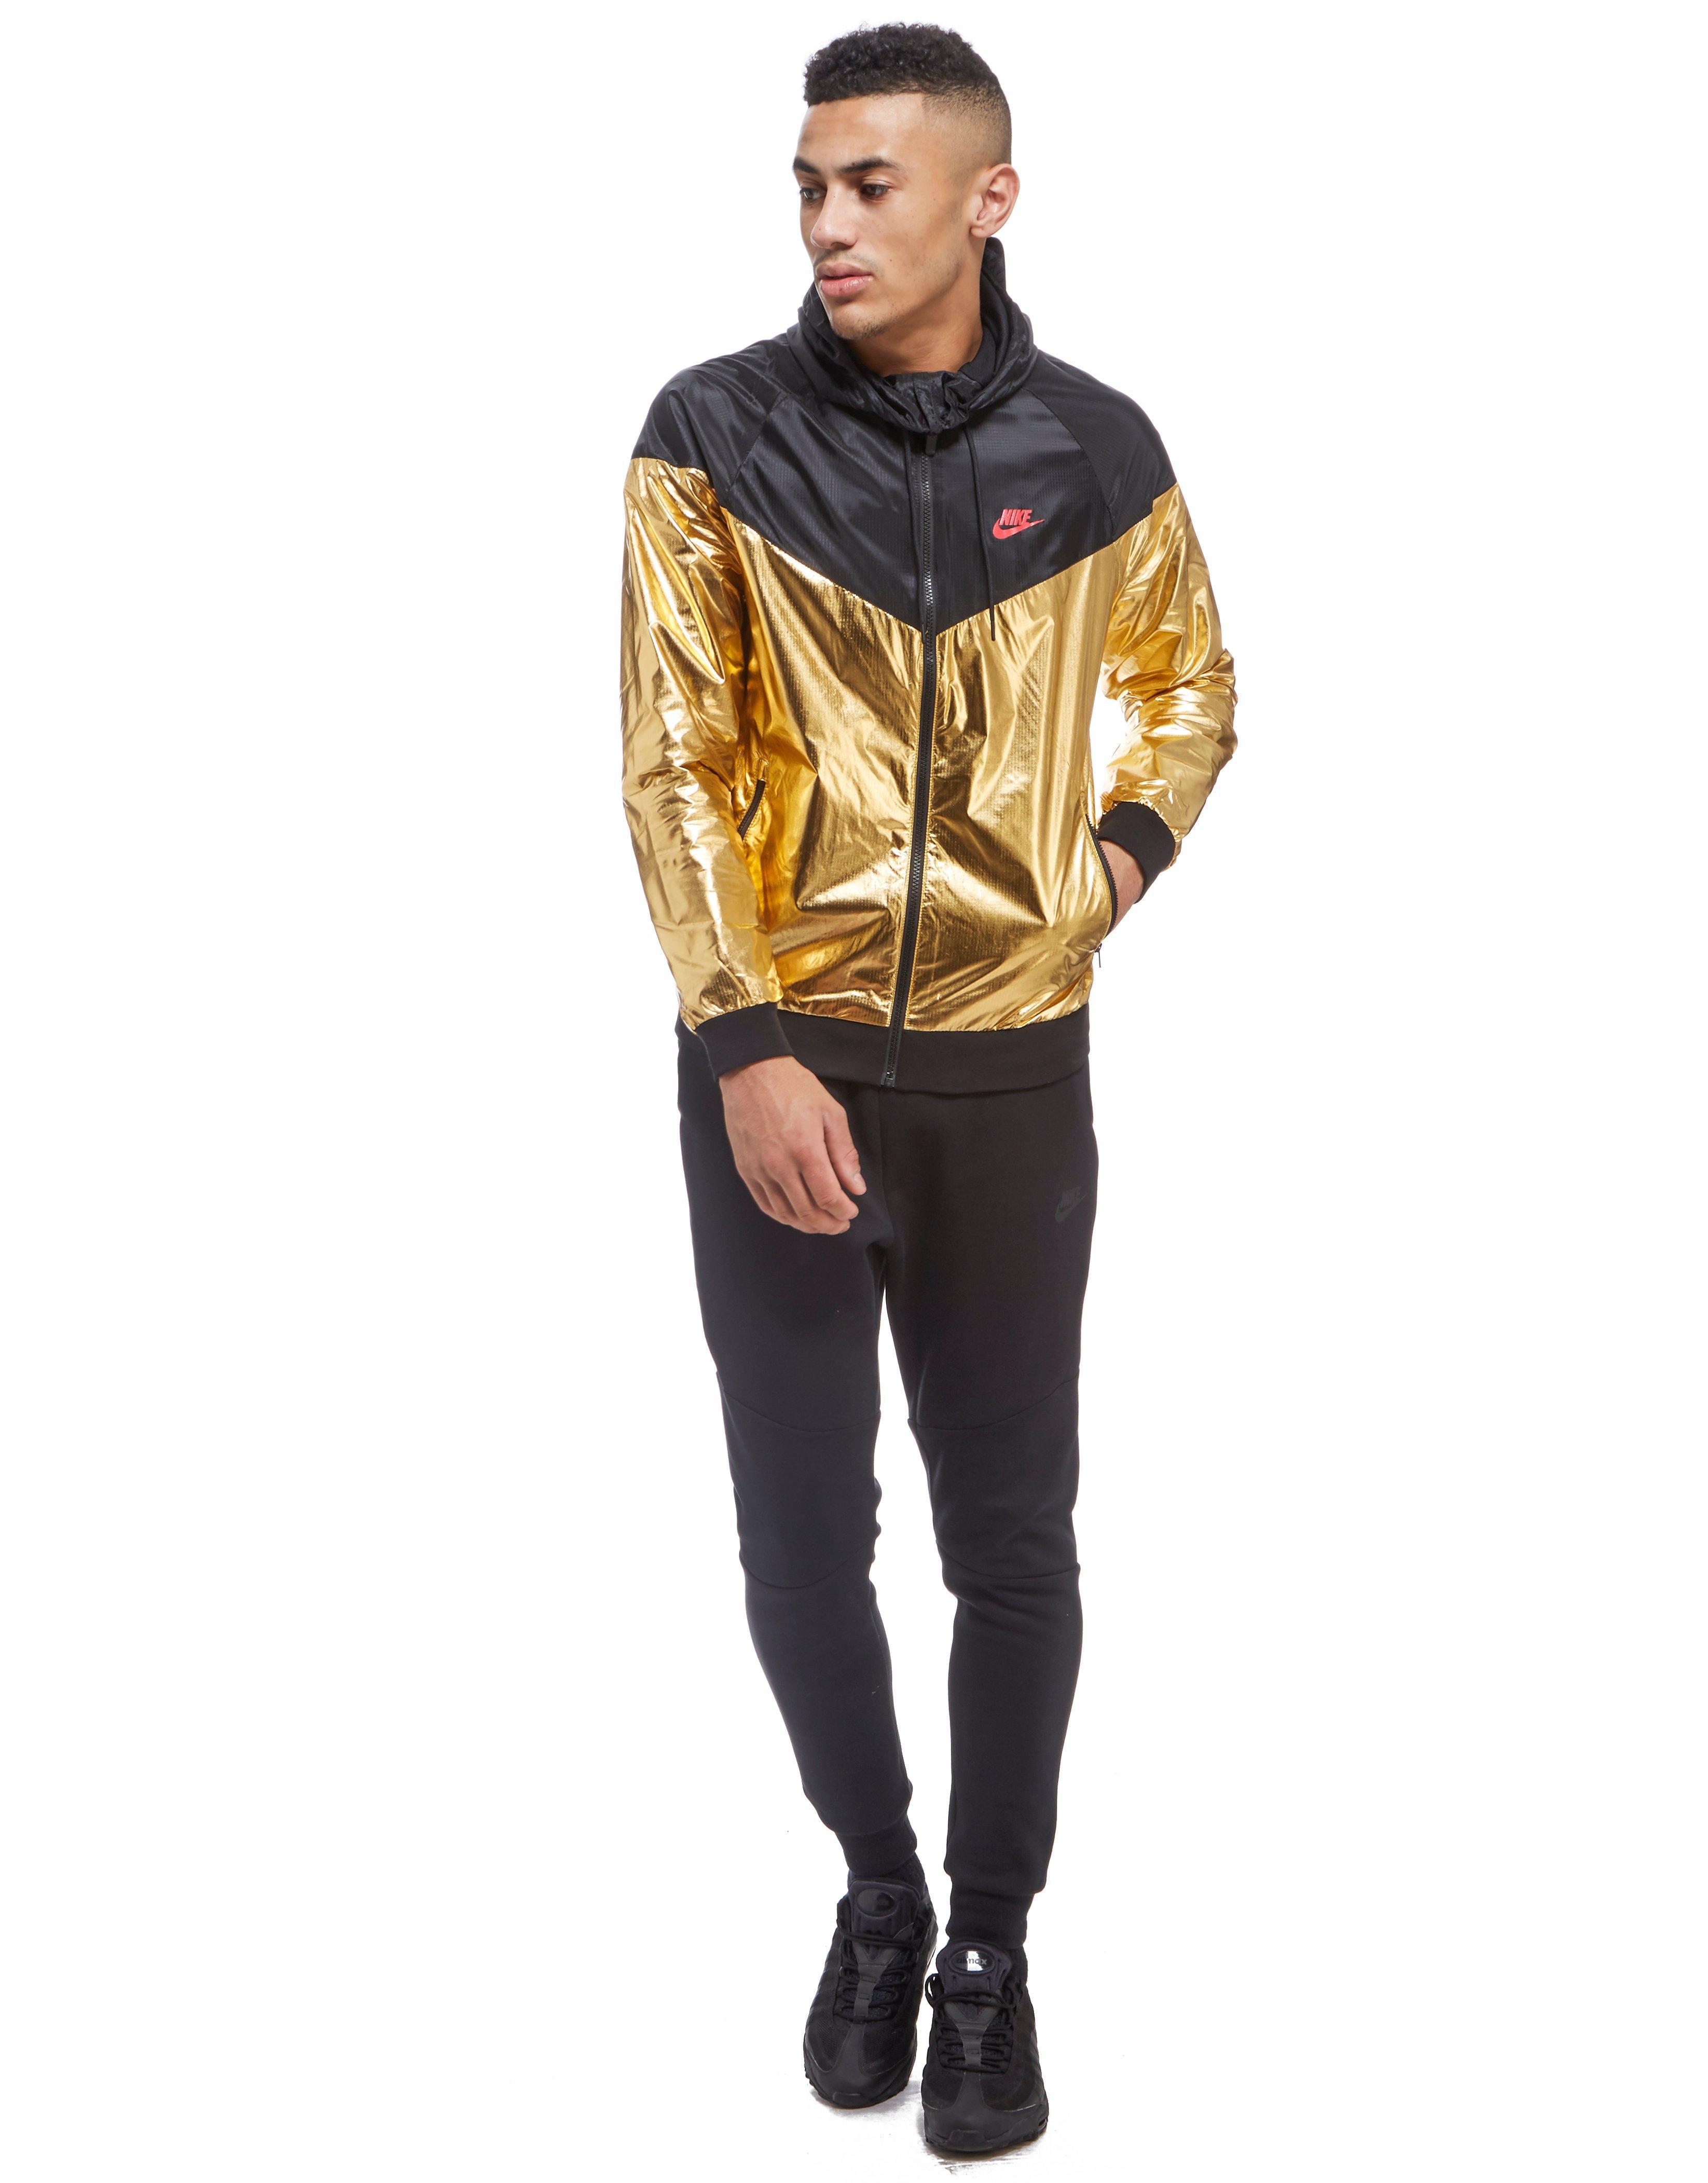 Nike Synthetic Windrunner Foil Jacket in Gold/Black (Metallic) for Men -  Lyst